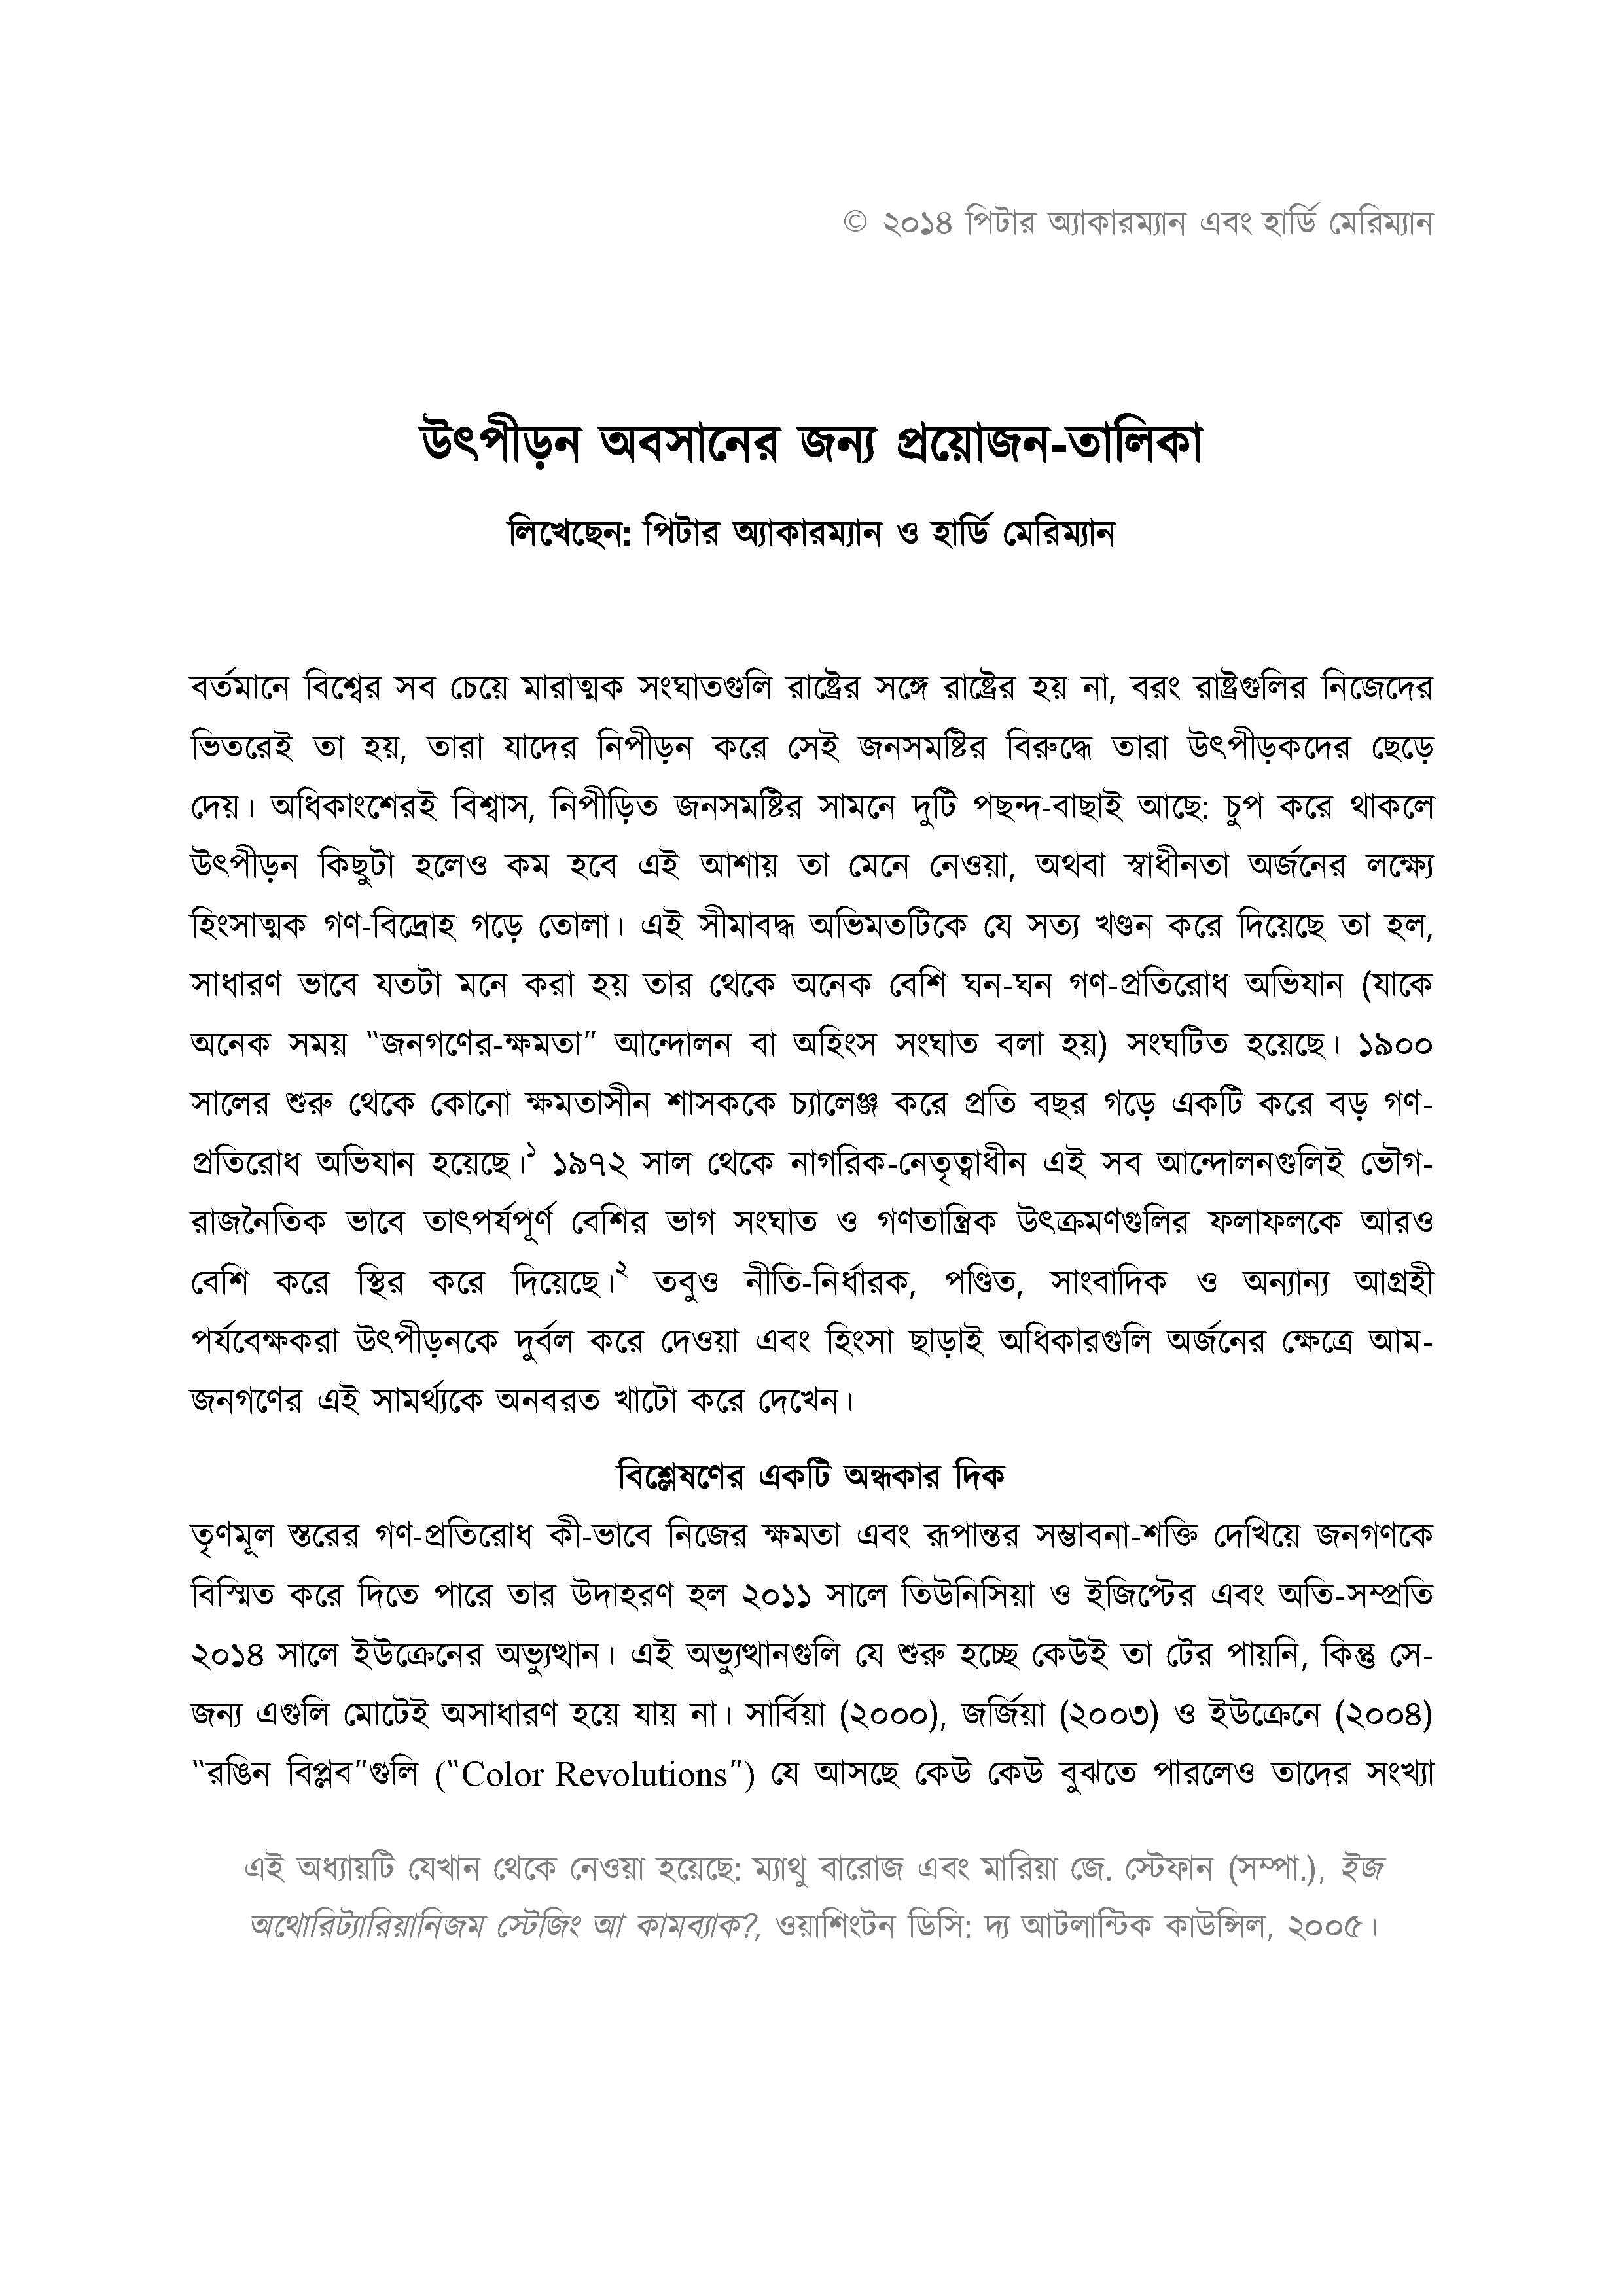 The Checklist for Ending Tyranny (Bangla)